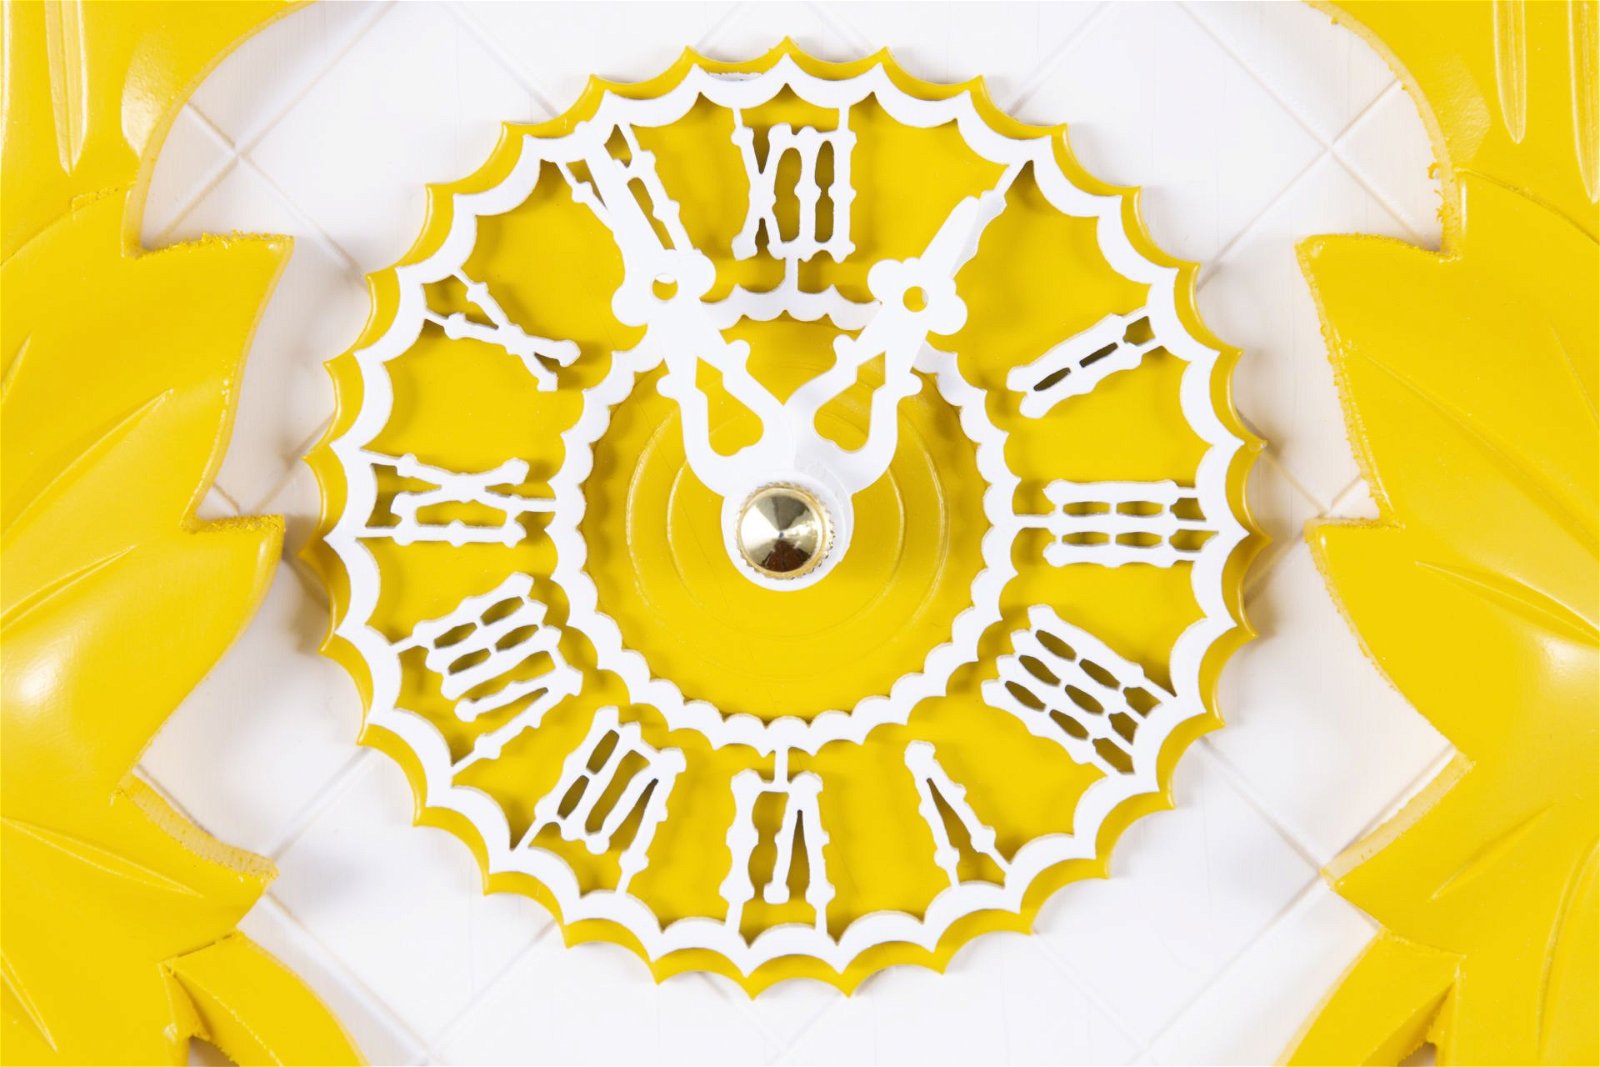 Moderne Kuckucksuhr Quarz-Uhrwerk 35cm von Trenkle Uhren